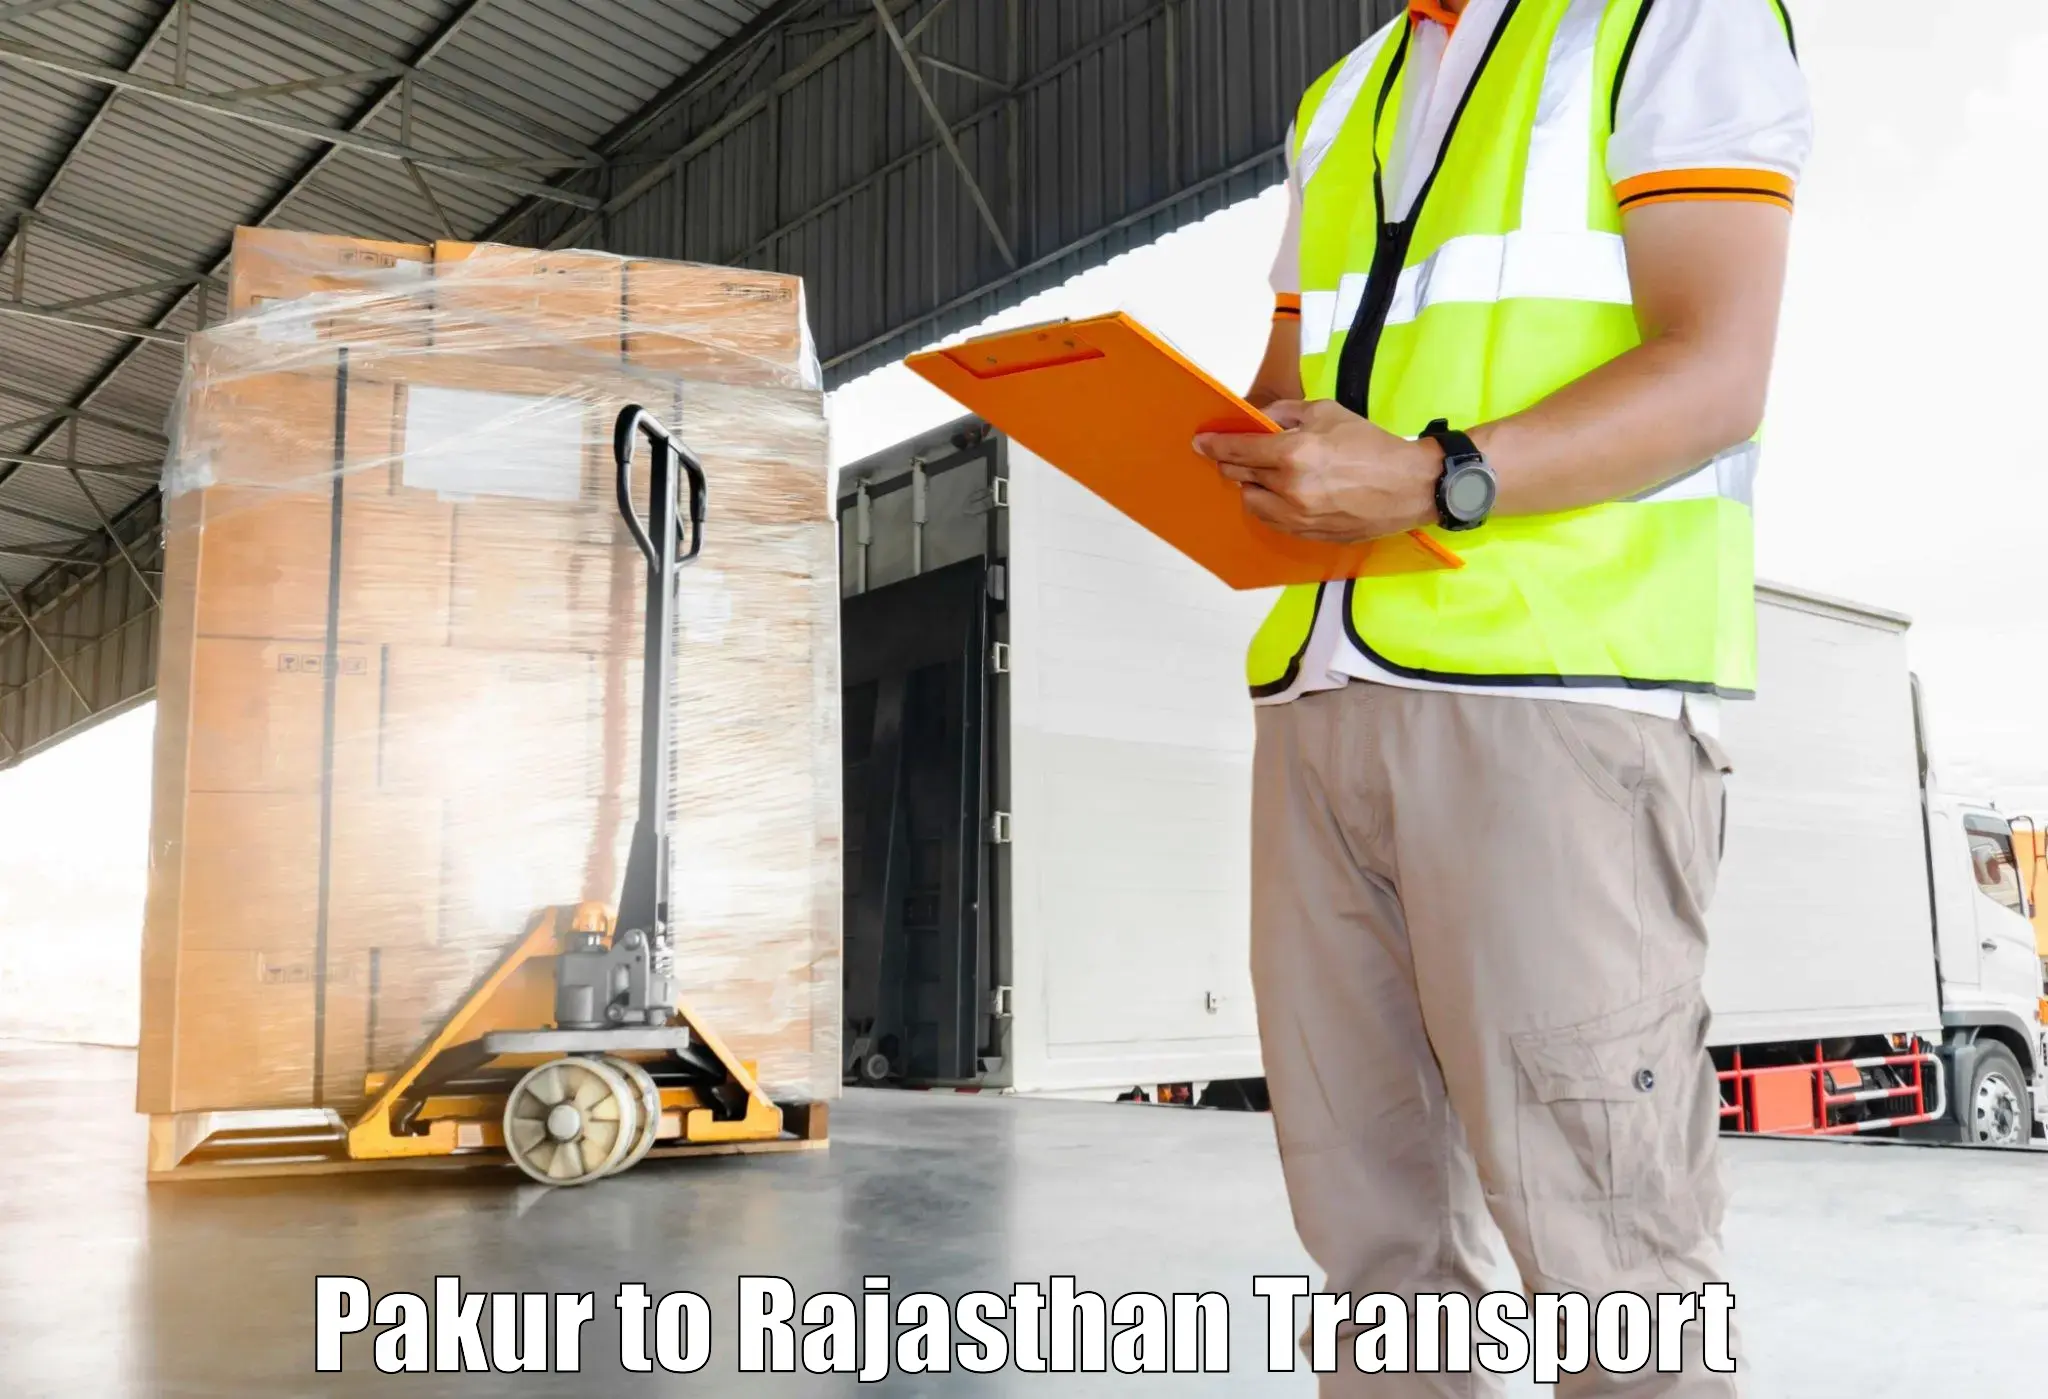 Transport in sharing Pakur to Bhilwara